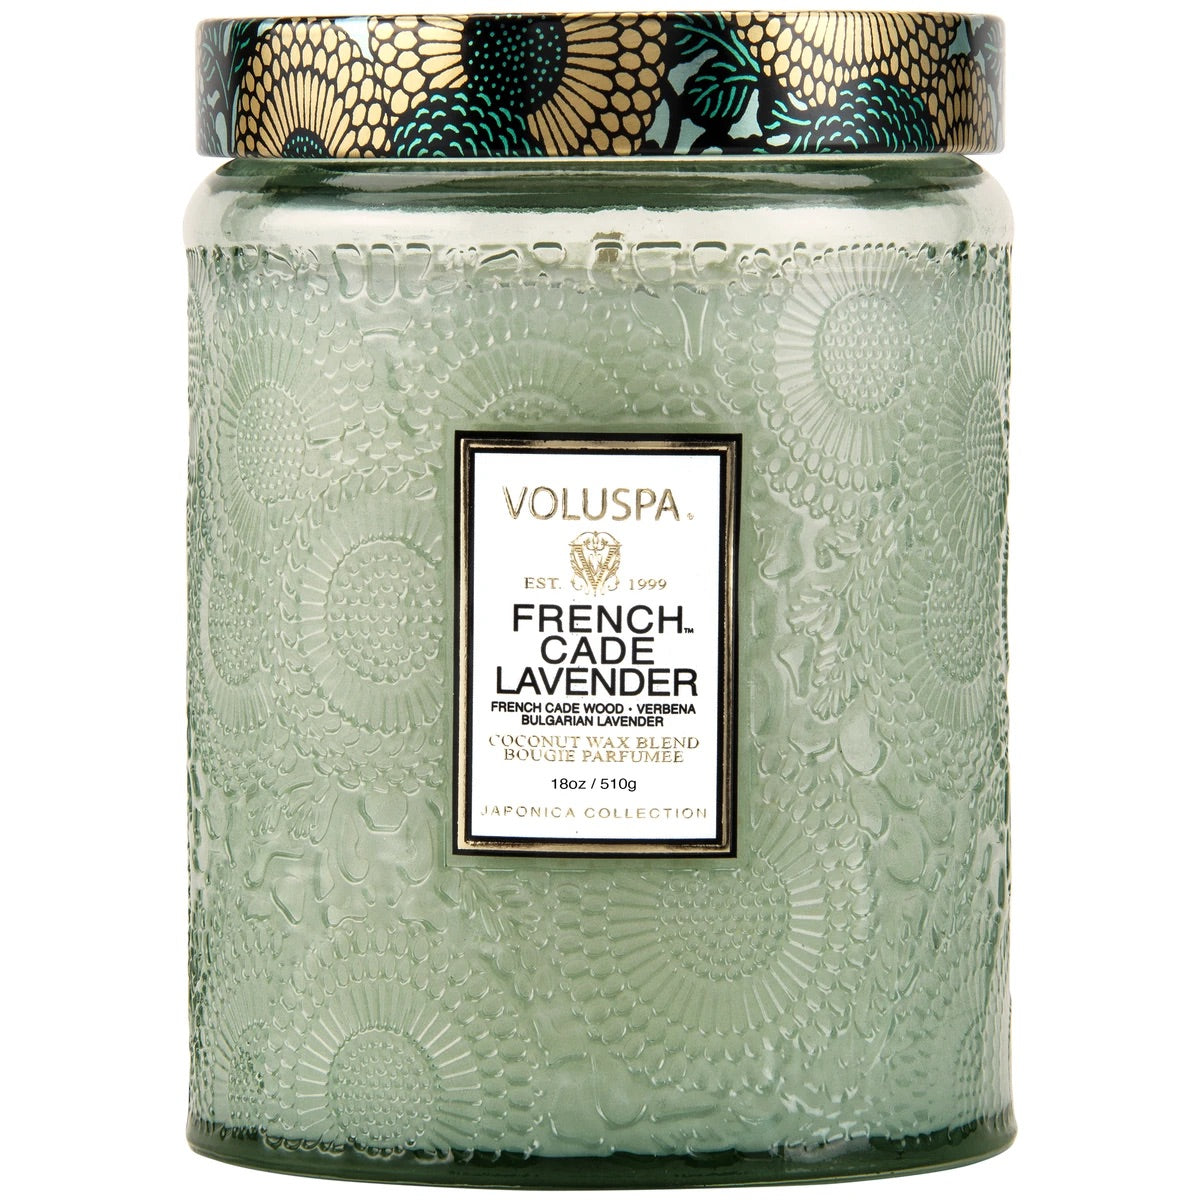 Voluspa Candle, 18oz Jar French Cade Lavender